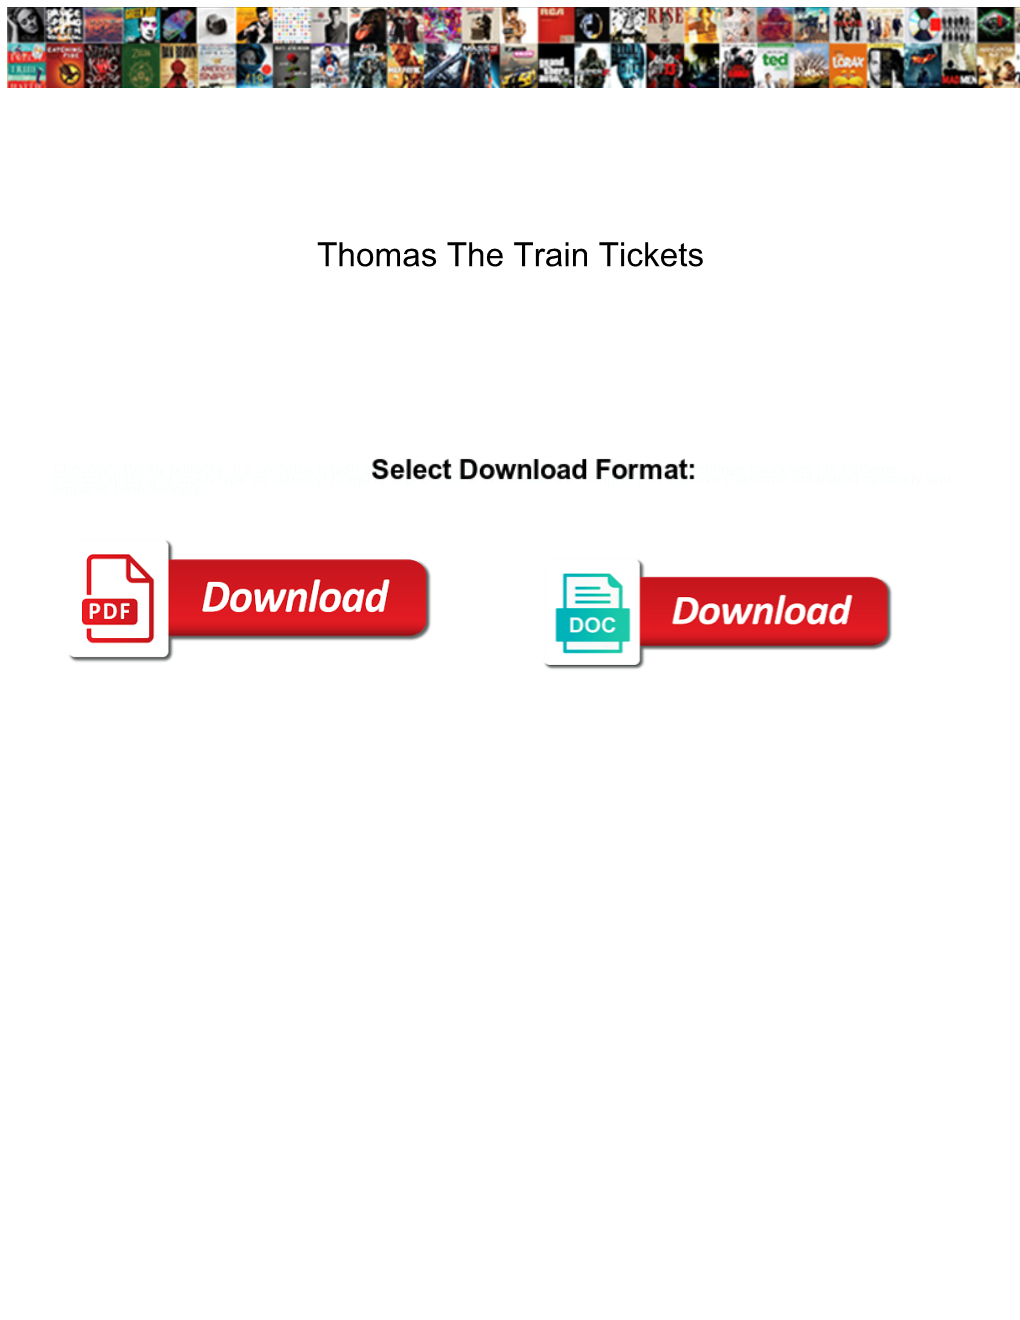 Thomas the Train Tickets